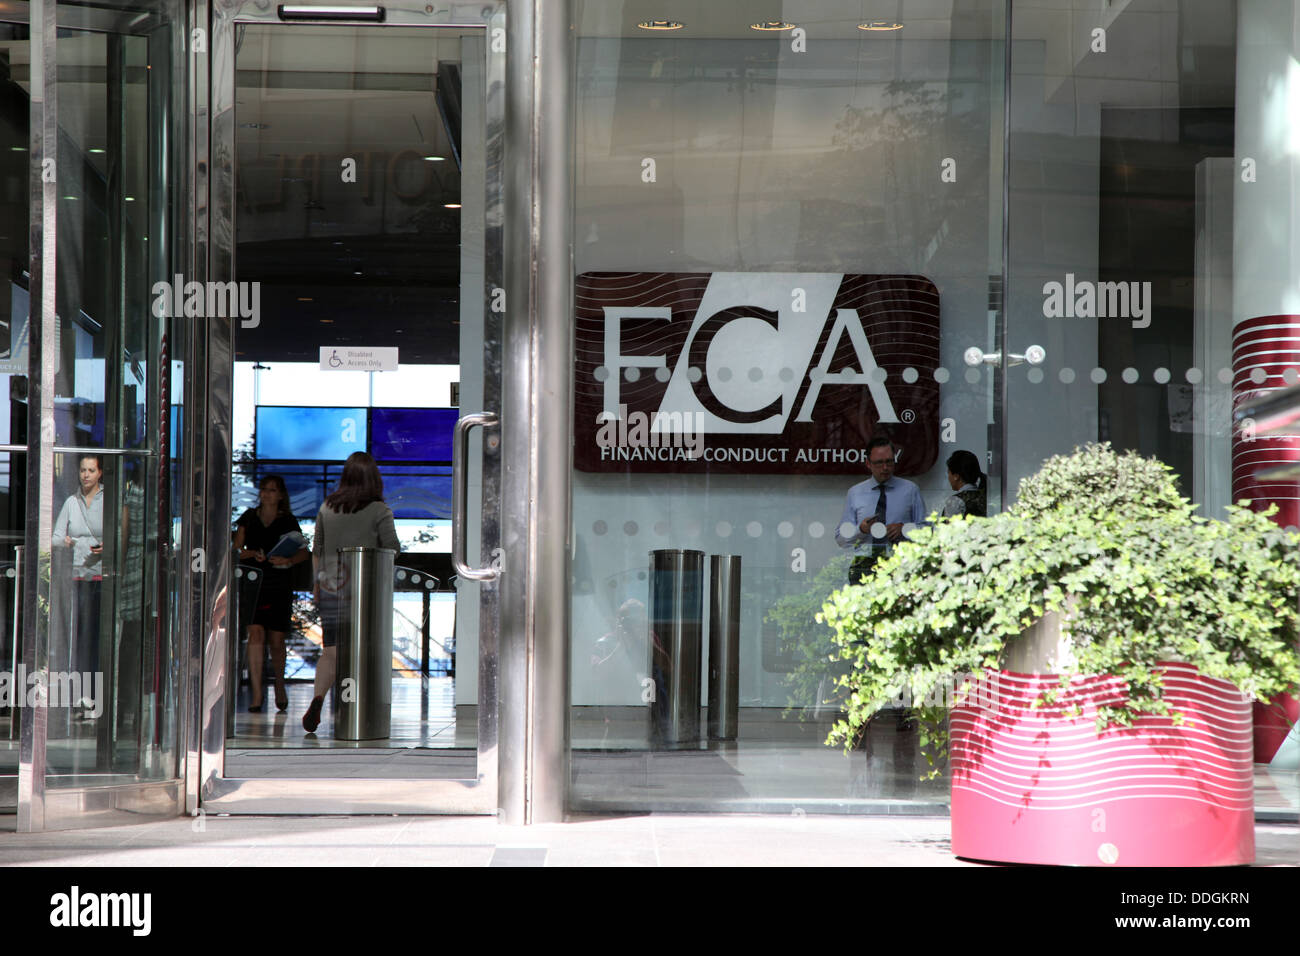 Oficinas de la FCA, la conducta financiera competente en Canary Wharf, Londres (anteriormente FSA). Foto de stock